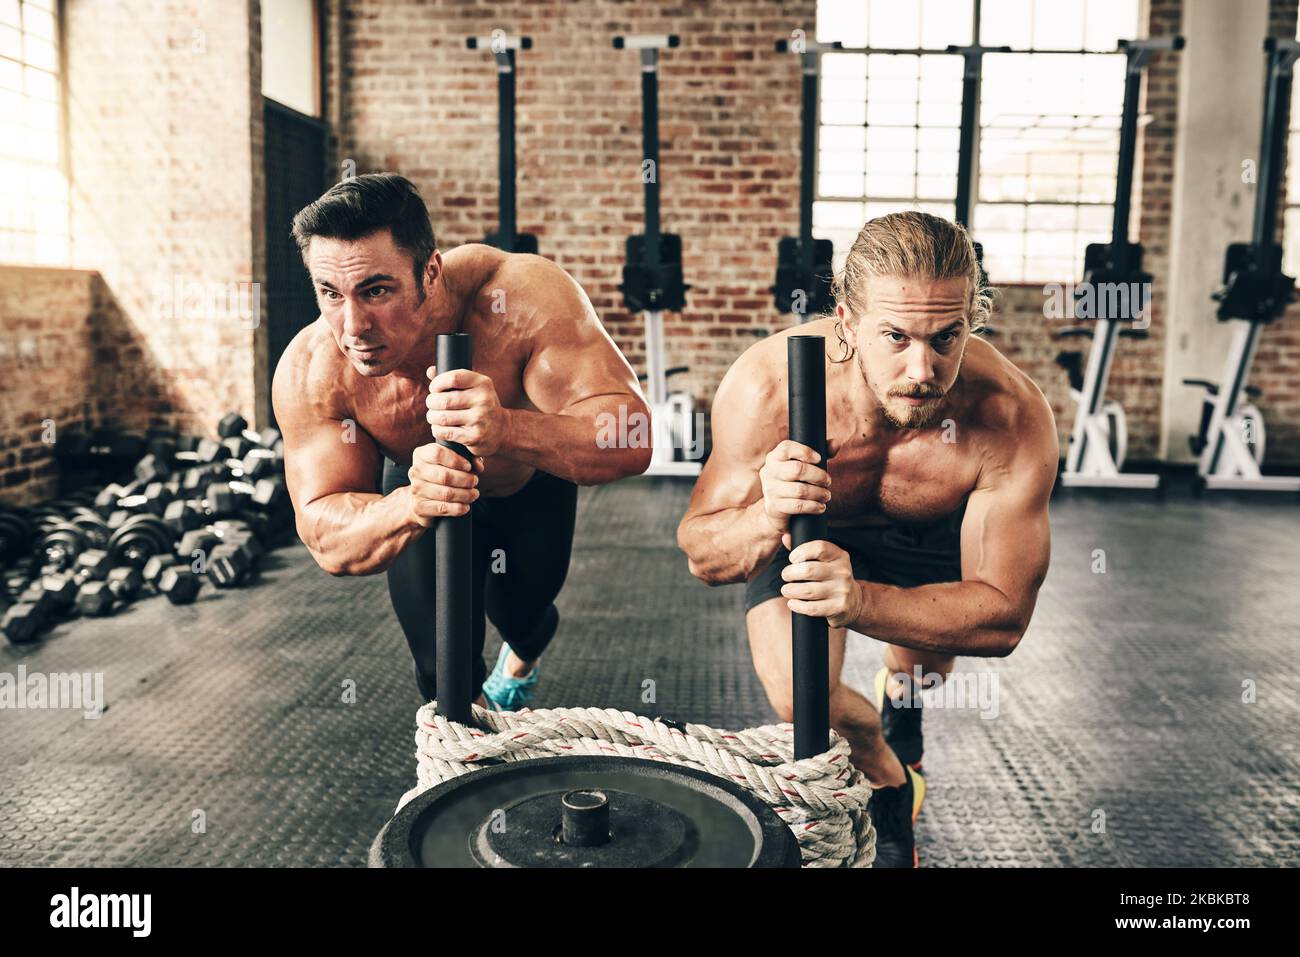 Keine Anstrengung. Zwei fitte und entschlossene junge Männer, die mit Gewichten gemeinsam in einem Fitnessstudio trainieren. Stockfoto